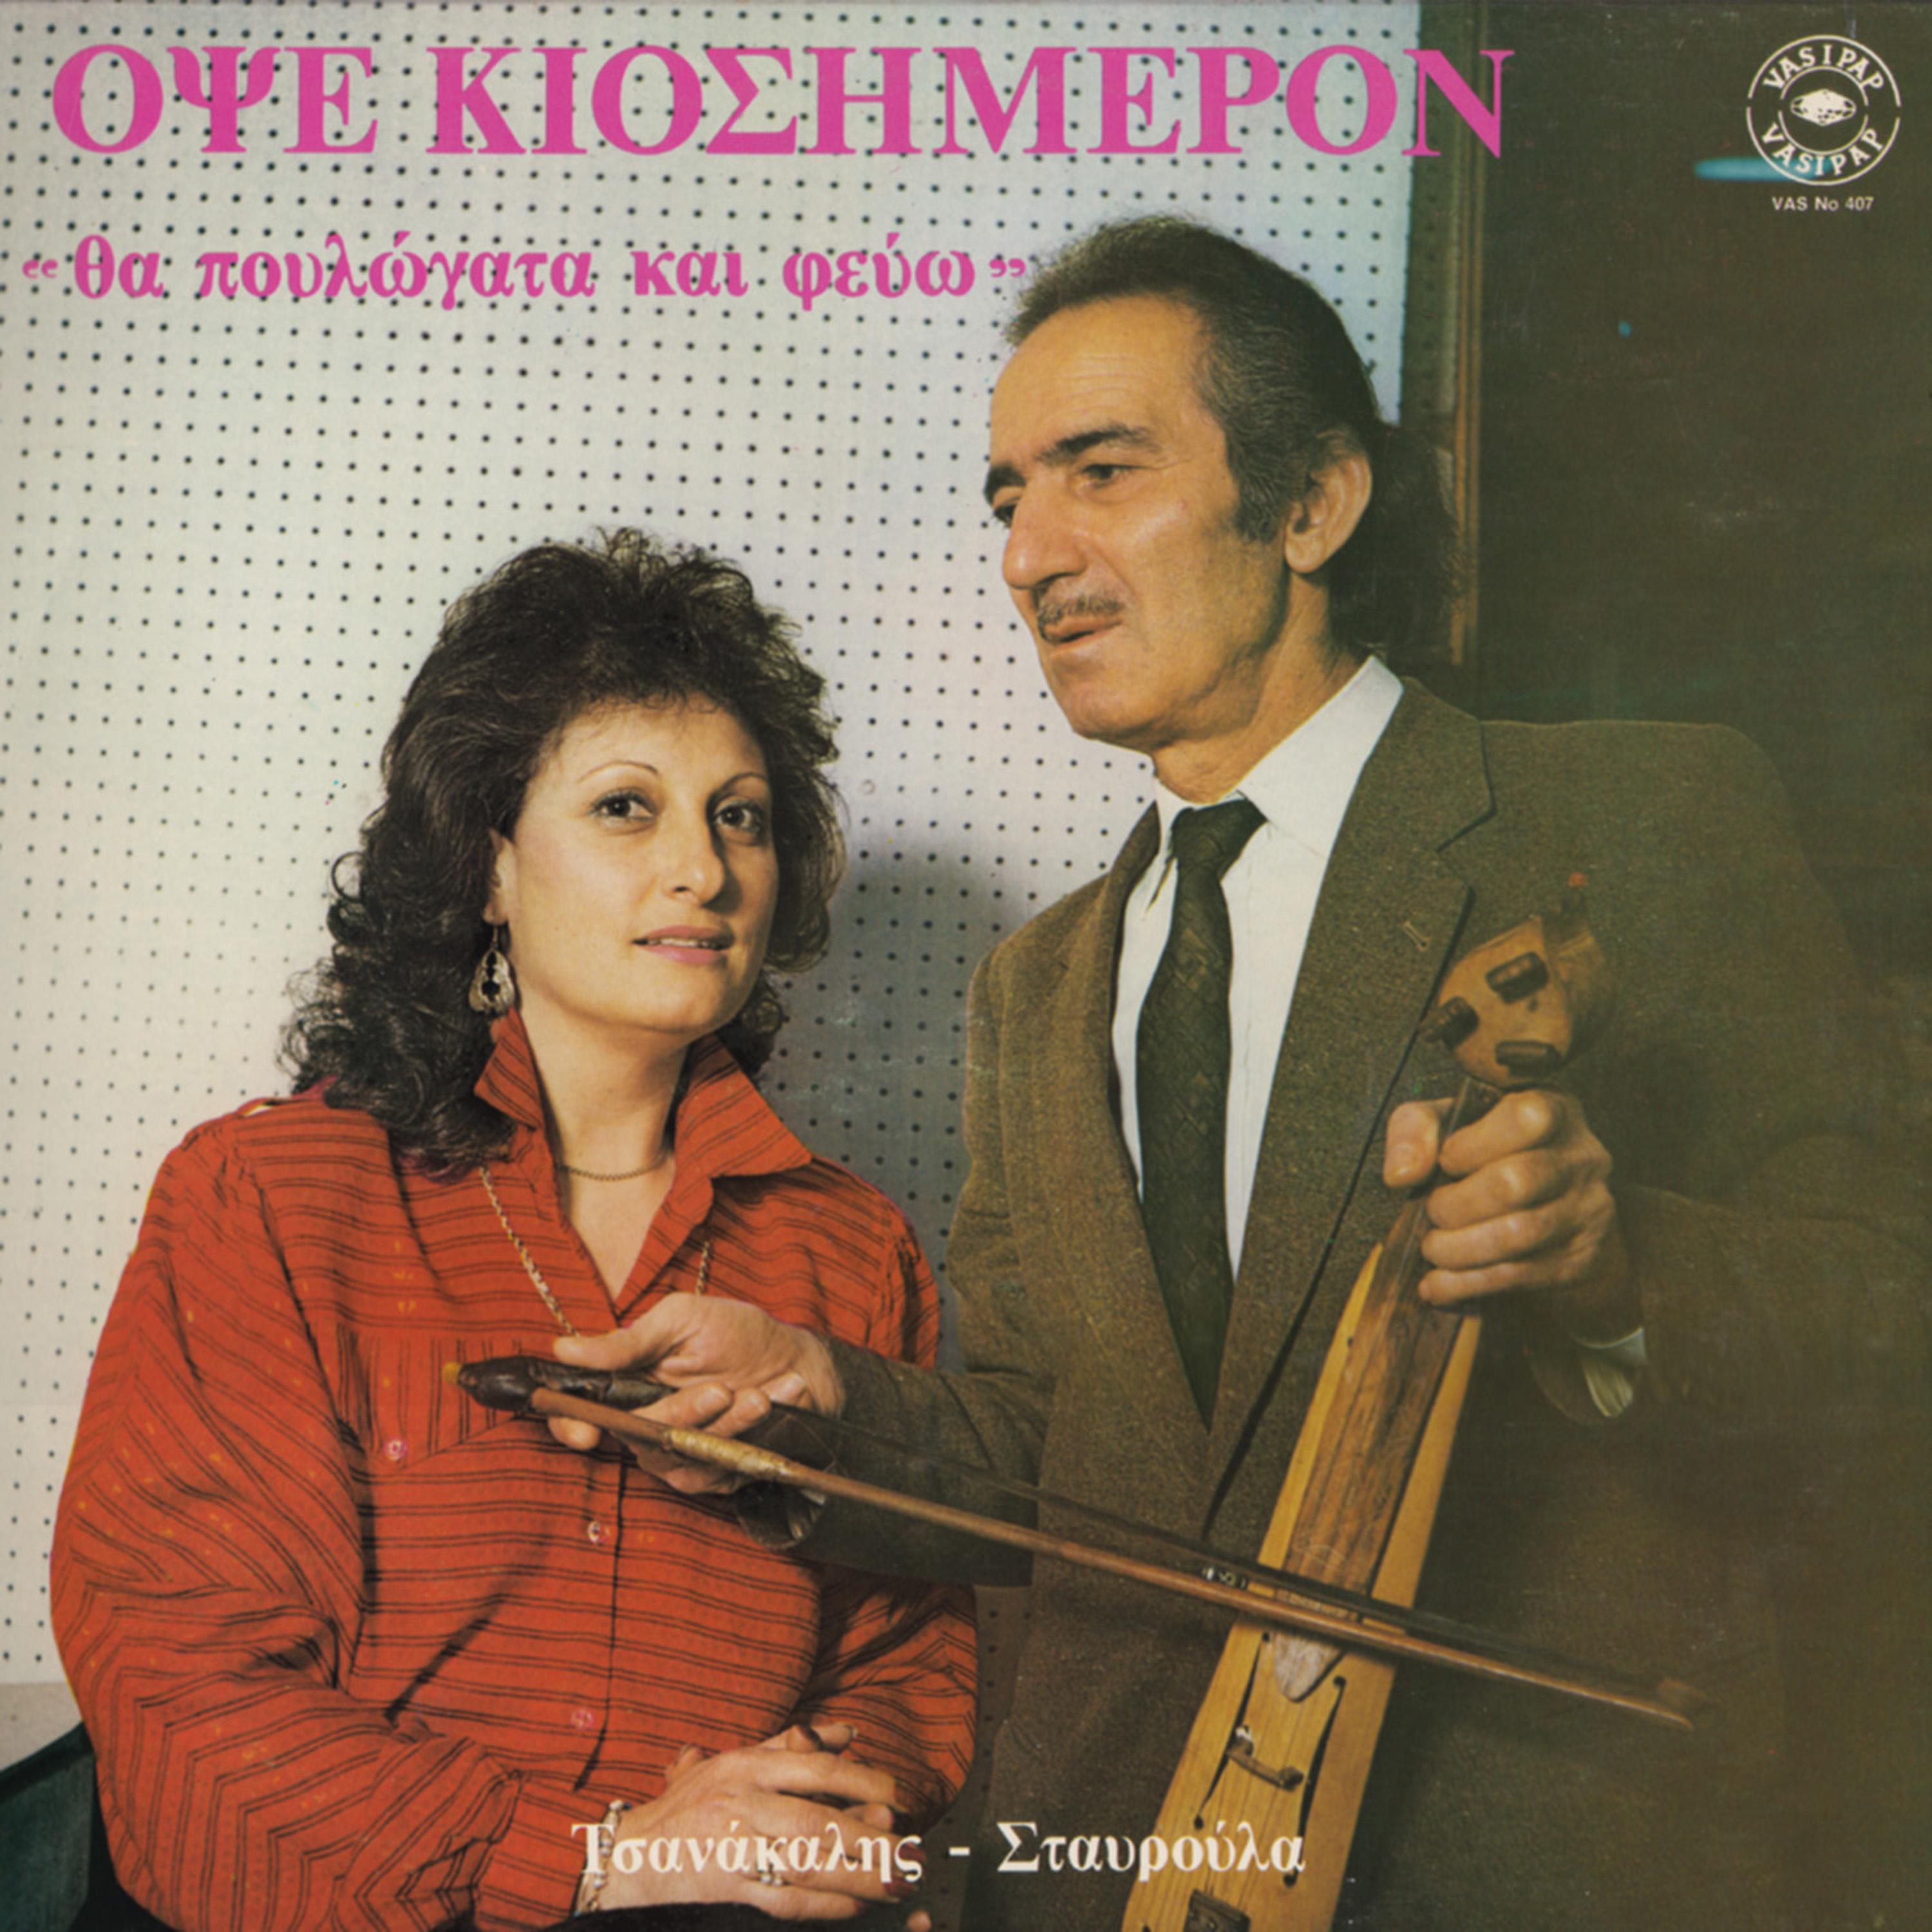 Постер альбома Opse kiosimeron - Tha poulogata ke fego